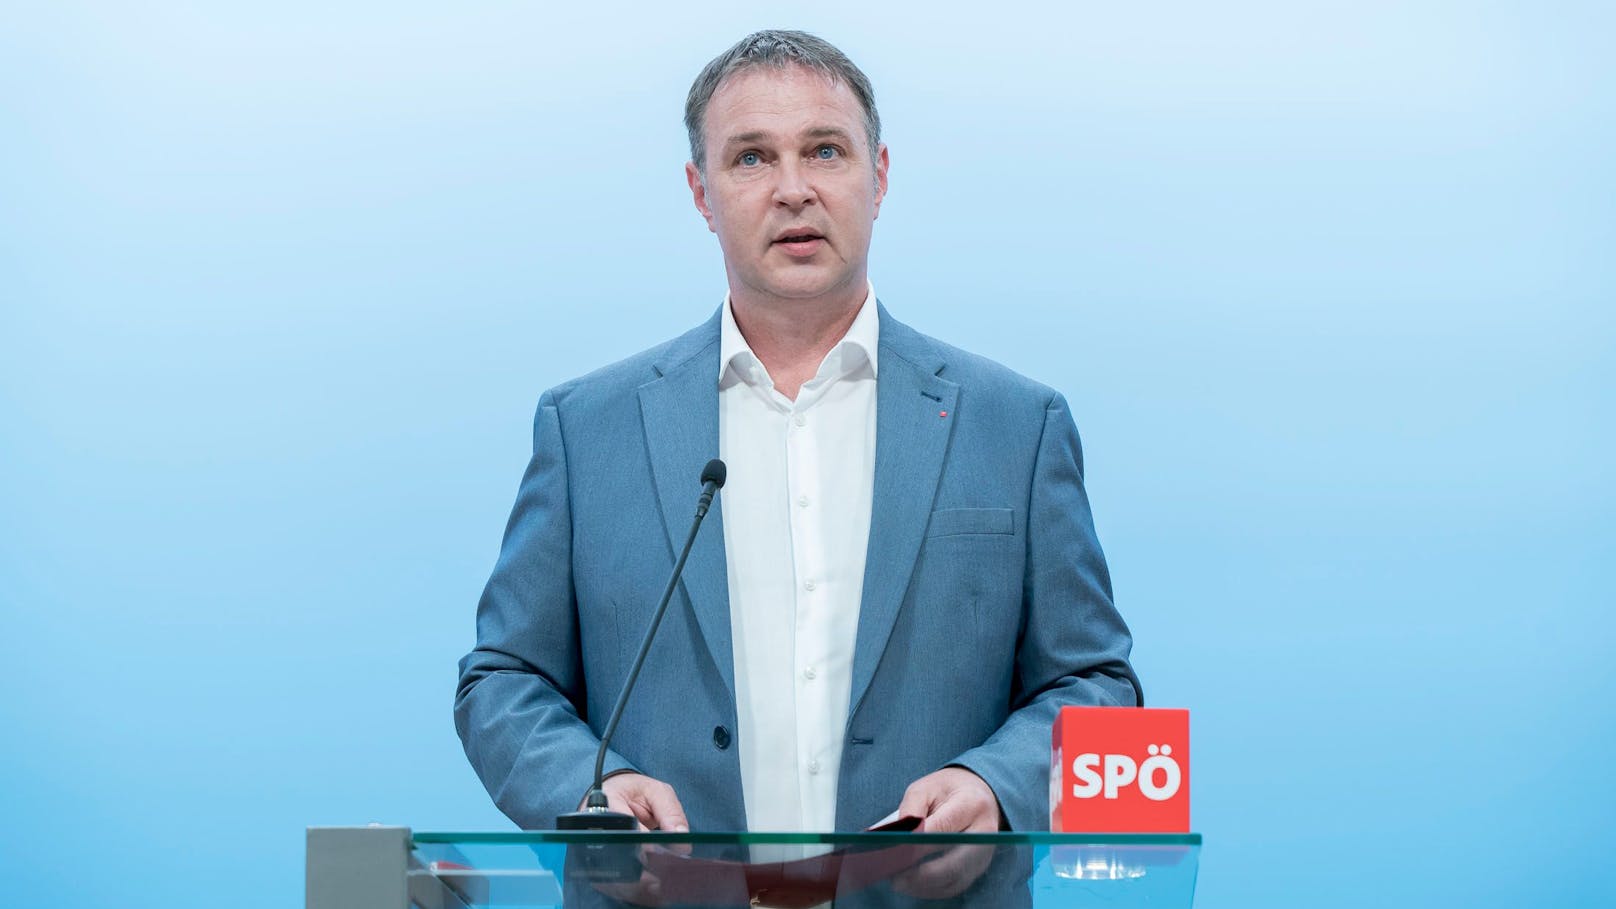 Erneut ist ein Streit ausgebrochen, auf welchem Platz Andreas Babler bei der SPÖ-Mitgliederbefragung gelandet ist.